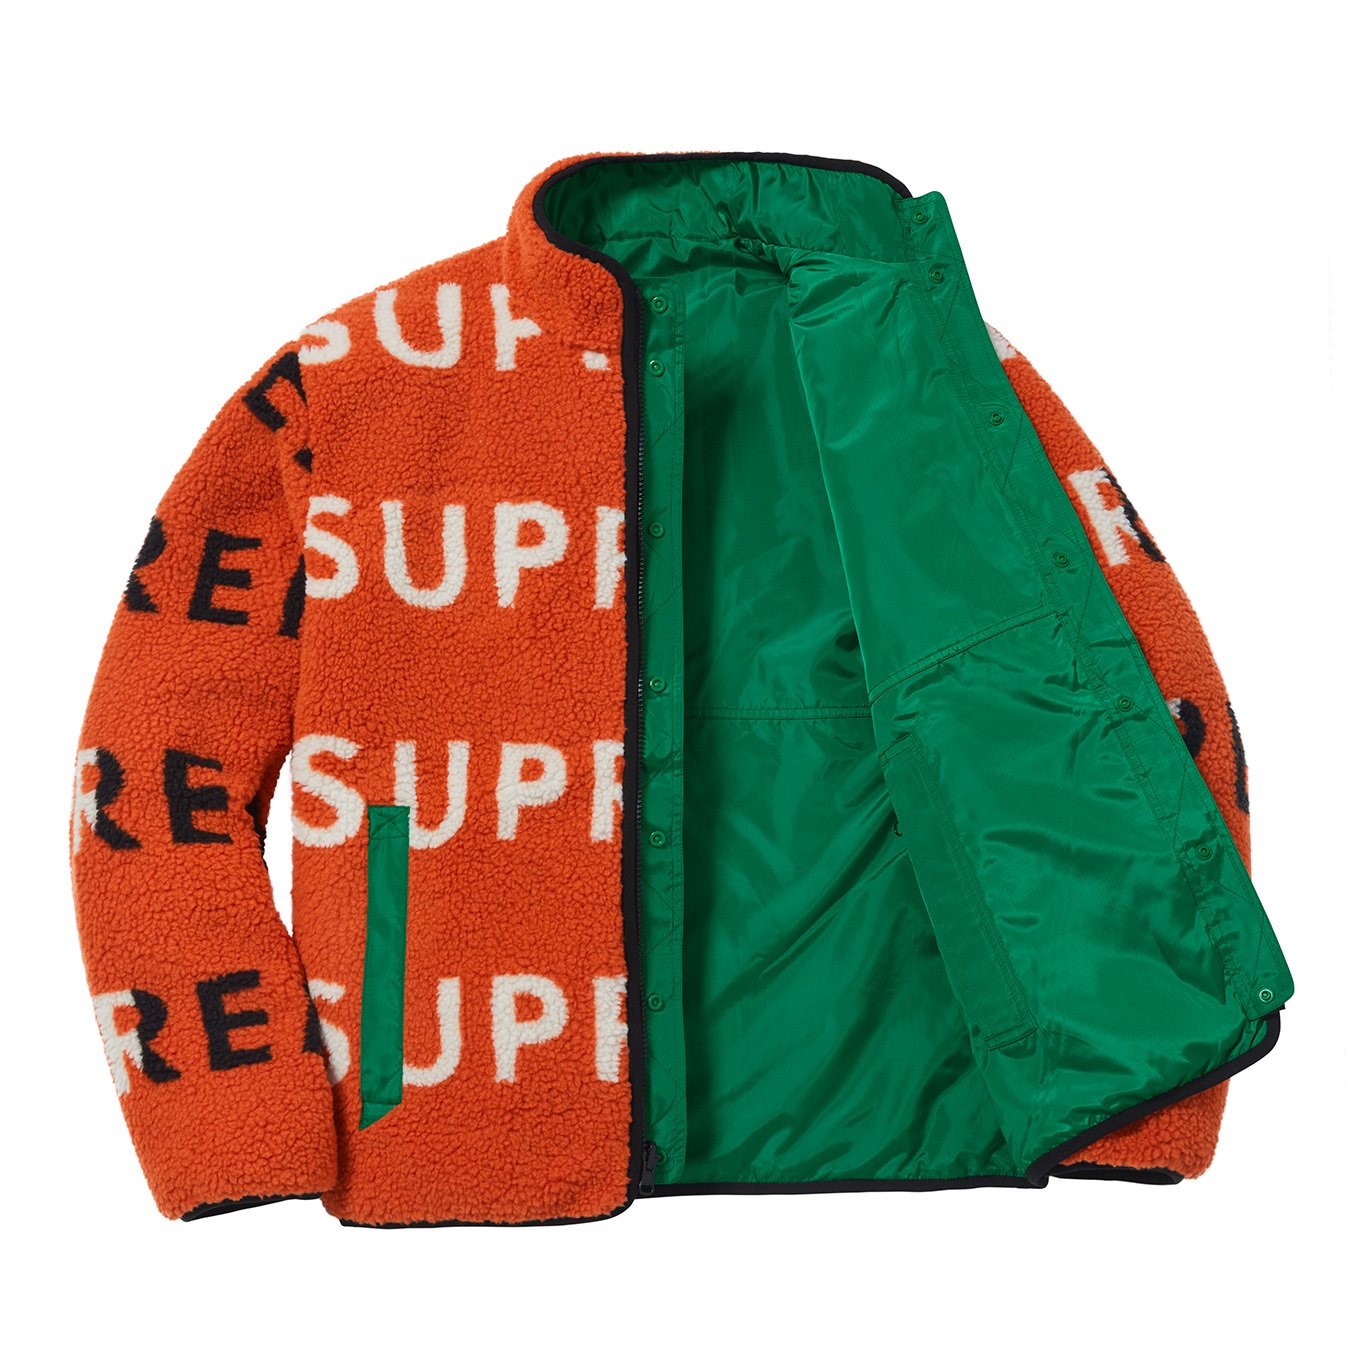 24509円 (税込) supreme reversible logo fleece jacket